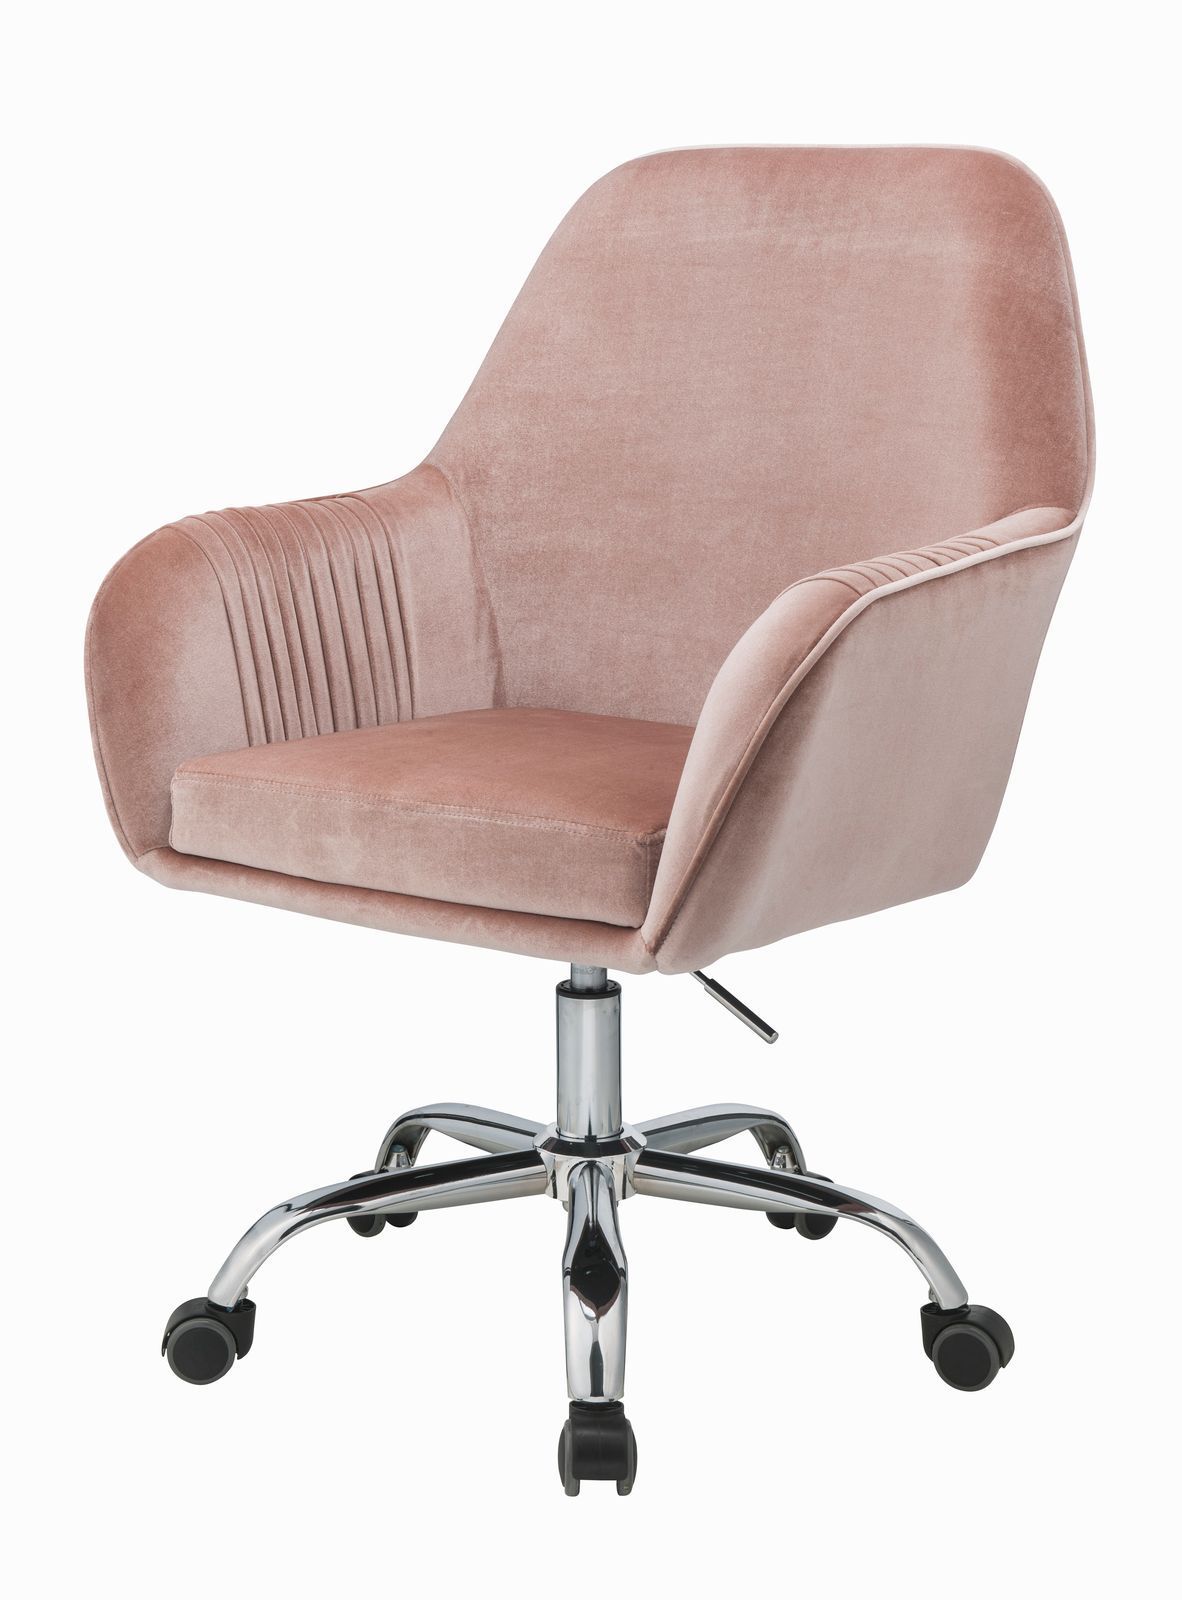 ACME Eimer Office Chair in Peach Velvet & Chrome